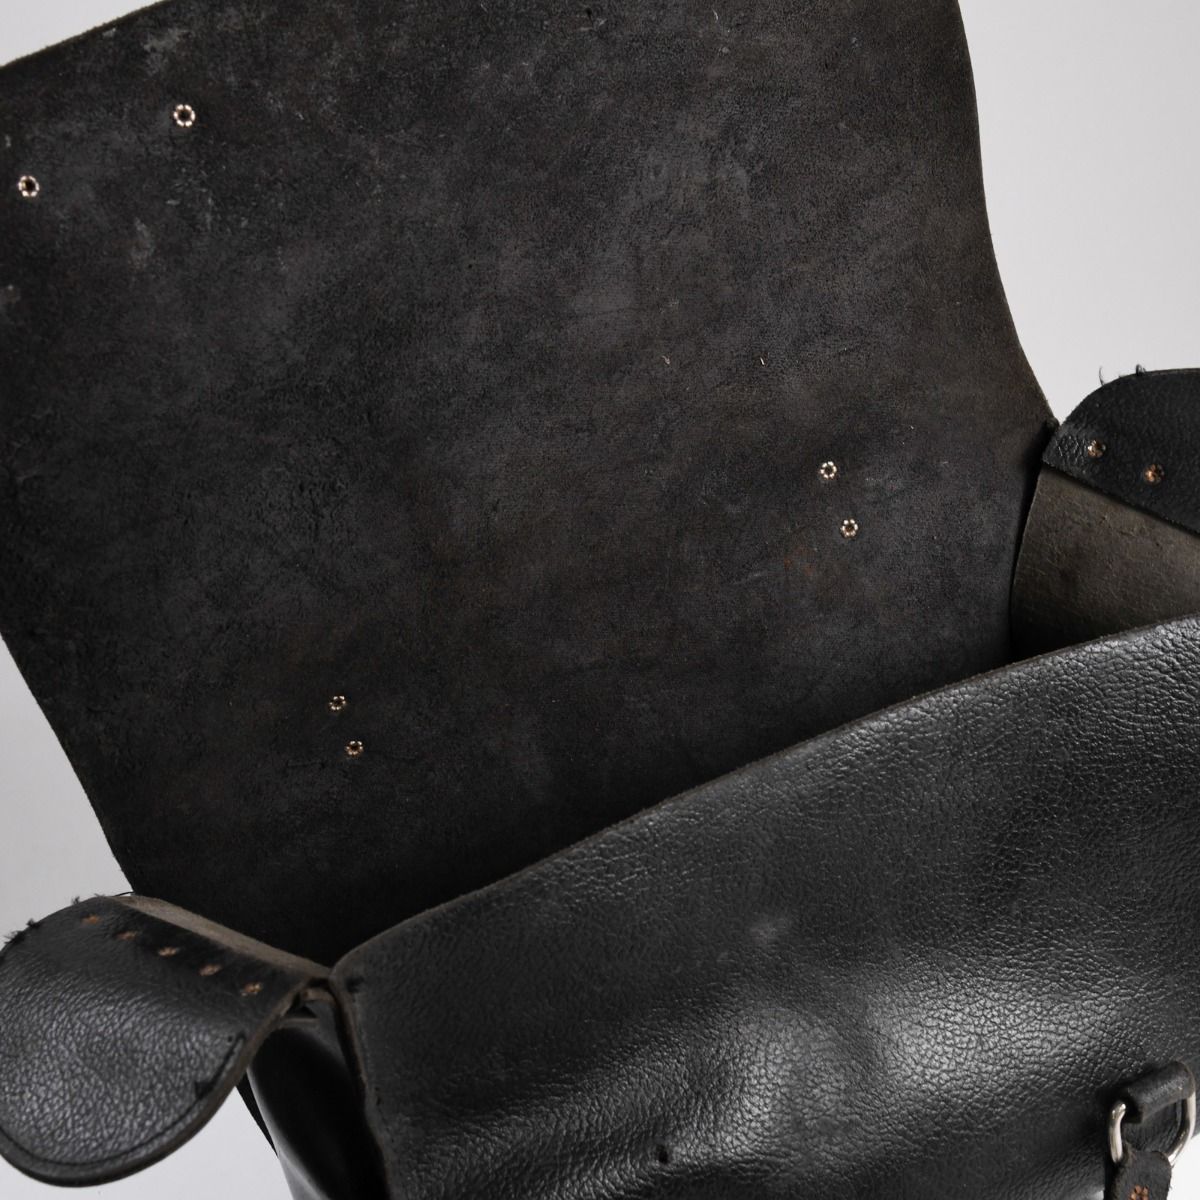 Vintage Black Leather Tool Bag